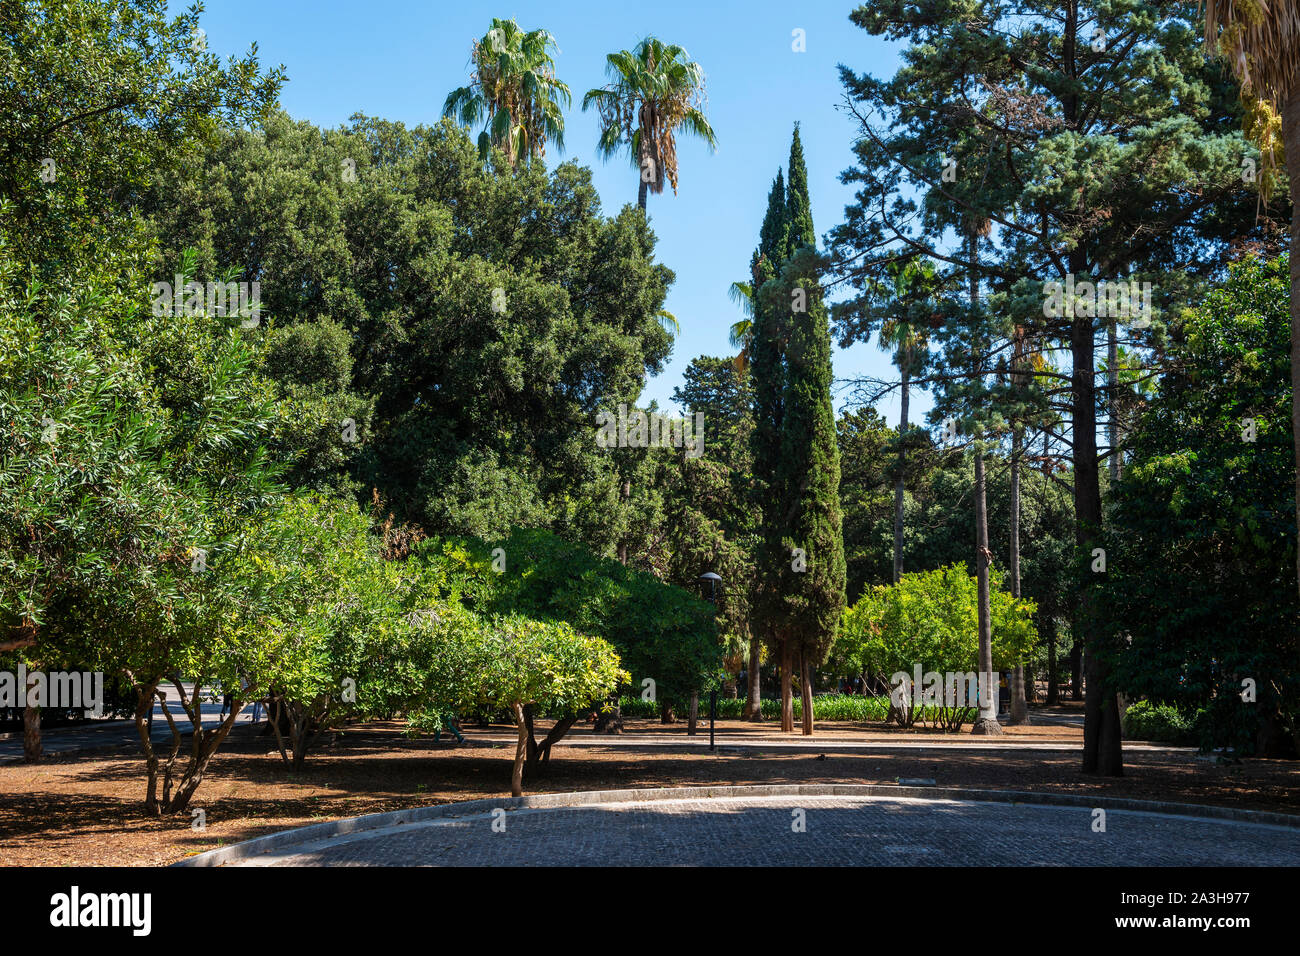 Villa Comunale public garden (Giardini Pubblici Giuseppe Garibaldi) in Lecce, Apulia (Puglia) in Southern Italy Stock Photo